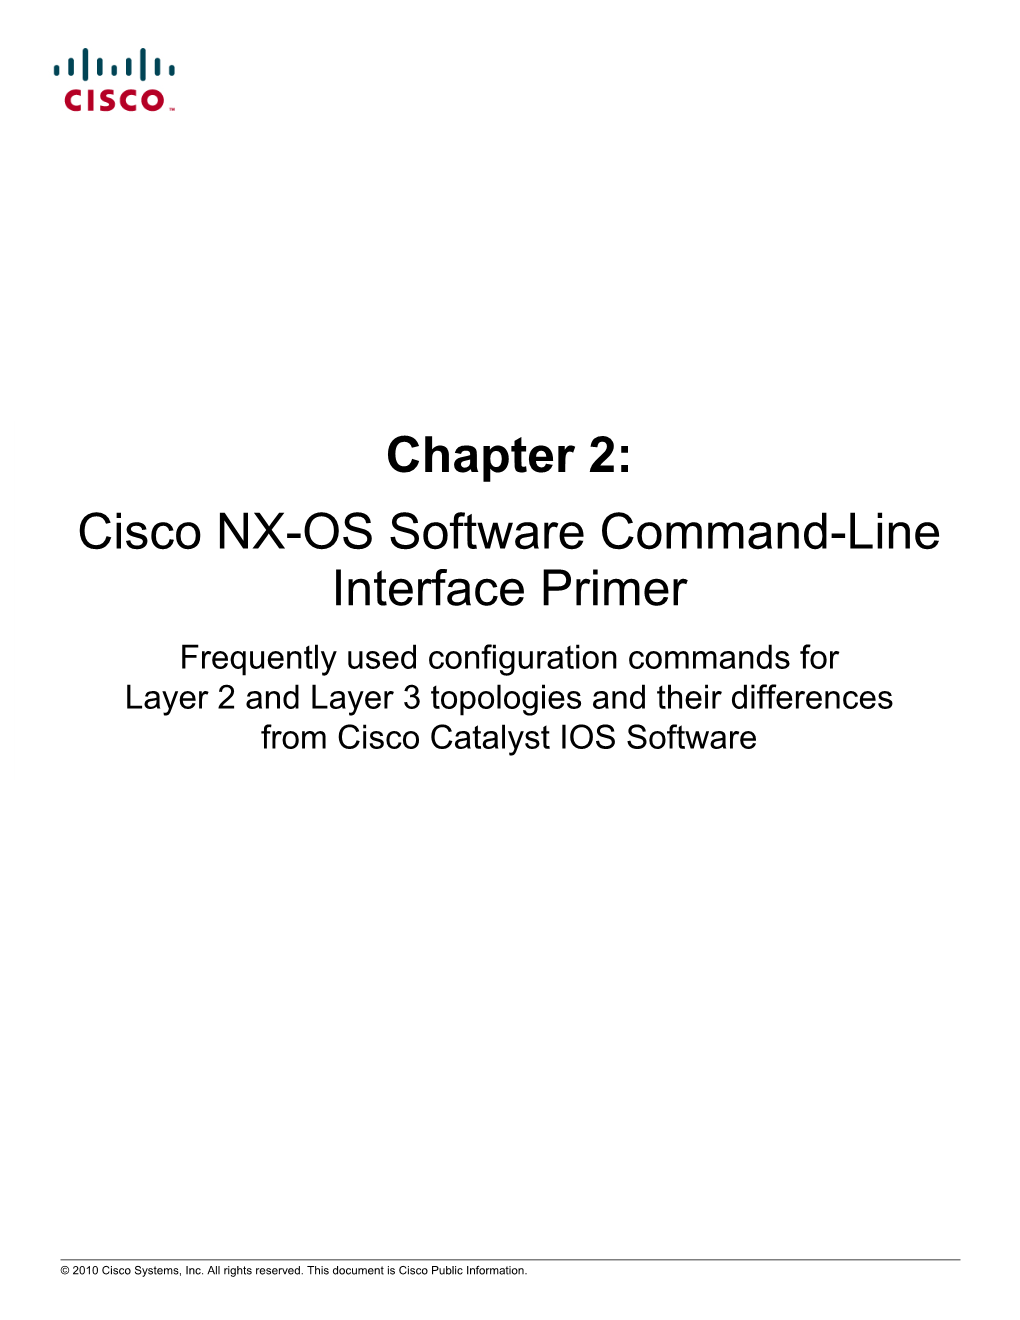 Cisco NX-OS Software Command-Line Interface Primer